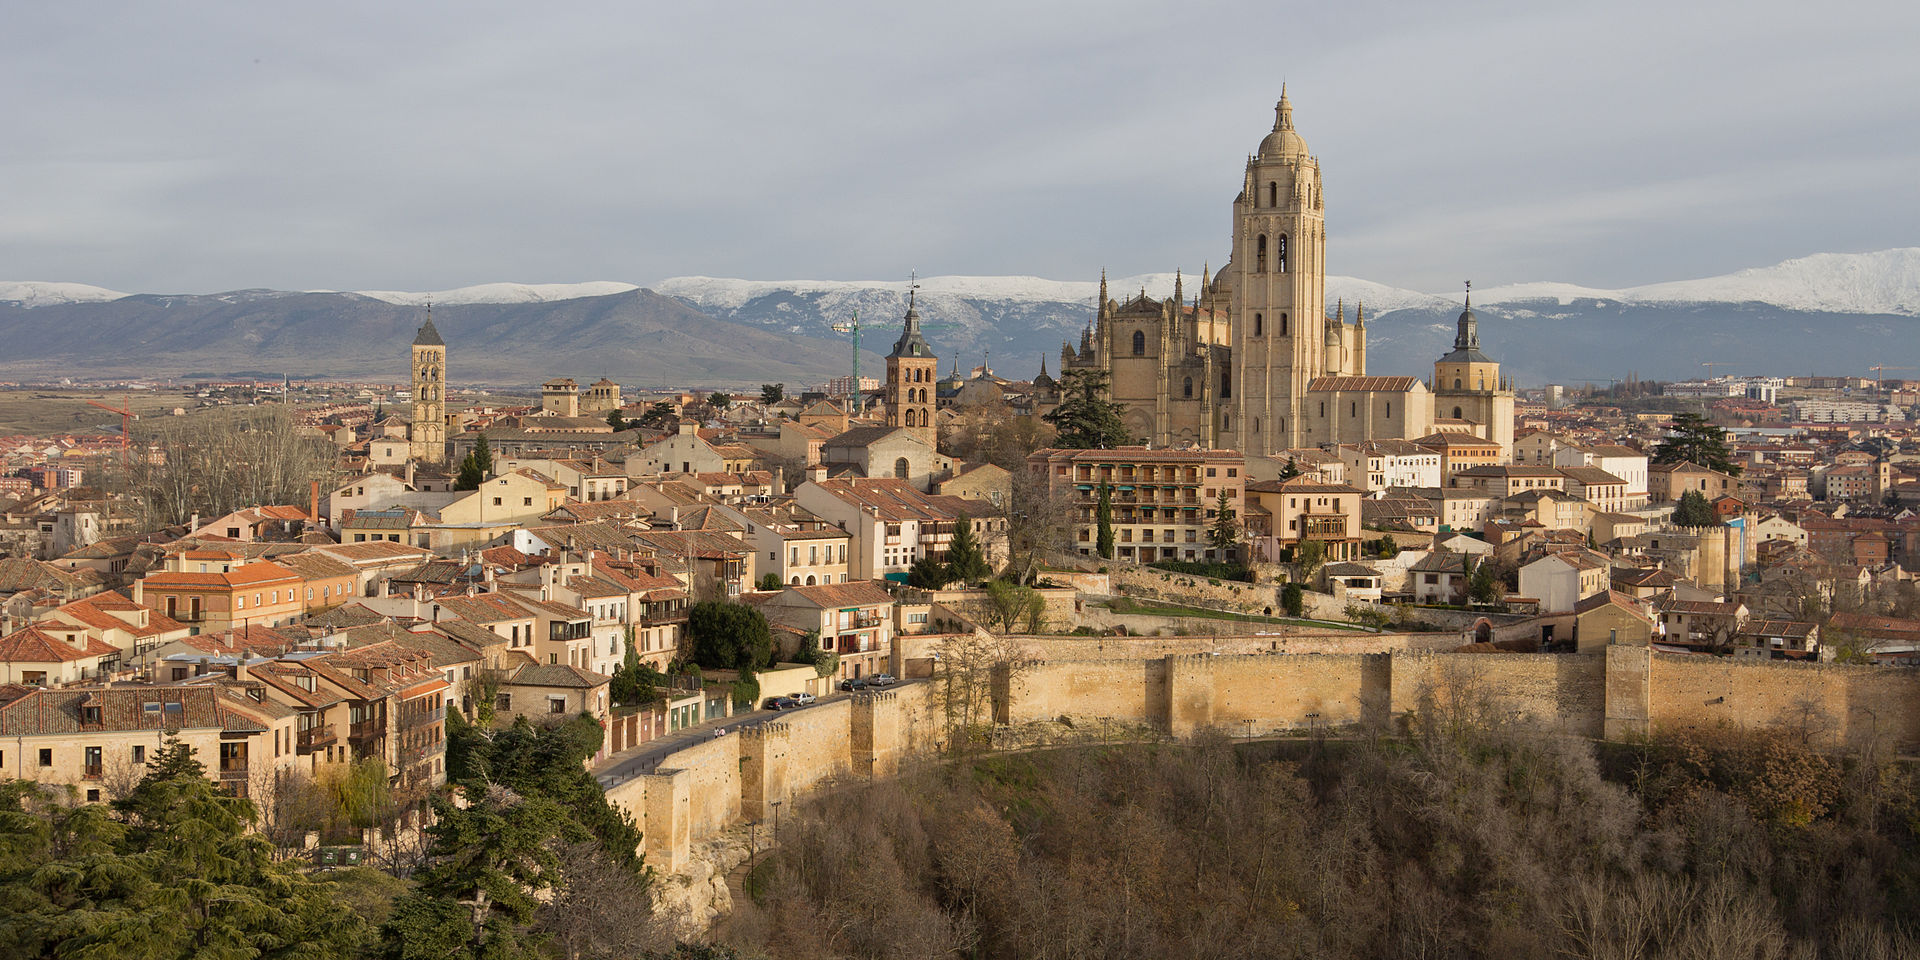 Vista panorámica de la ciudad antigua de Segovia, en la que destaca su imponente catedral. Fuente: Wikicommons.